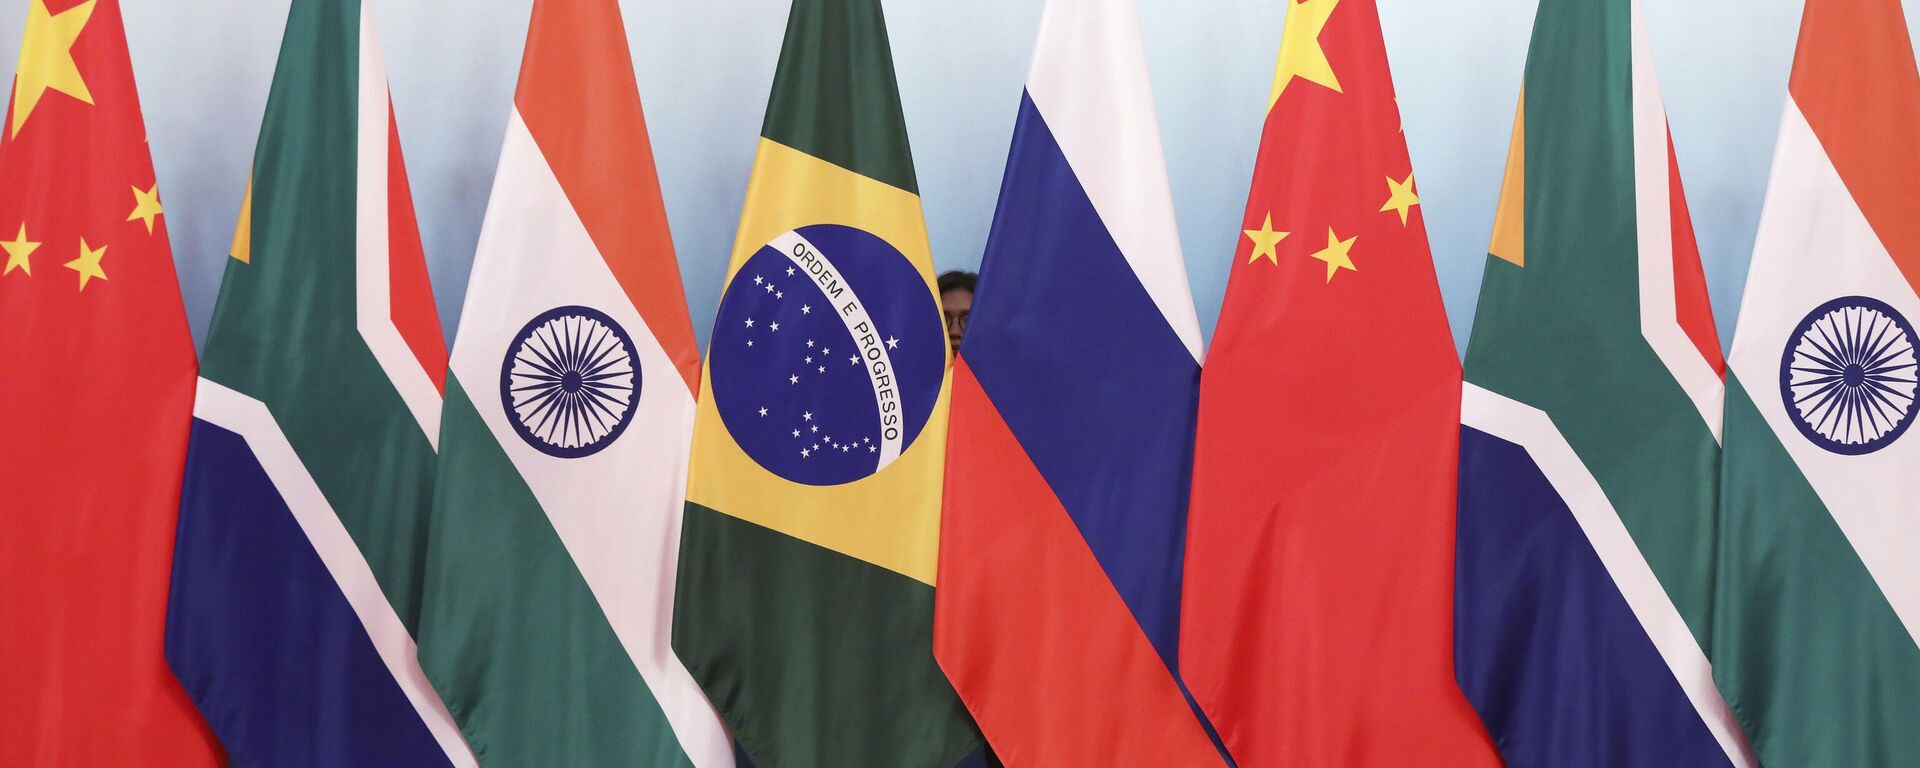 Bandeiras dos países-membros do BRICS durante encontro de cúpula na China, em 4 de setembro de 2017 - Sputnik Brasil, 1920, 25.11.2022